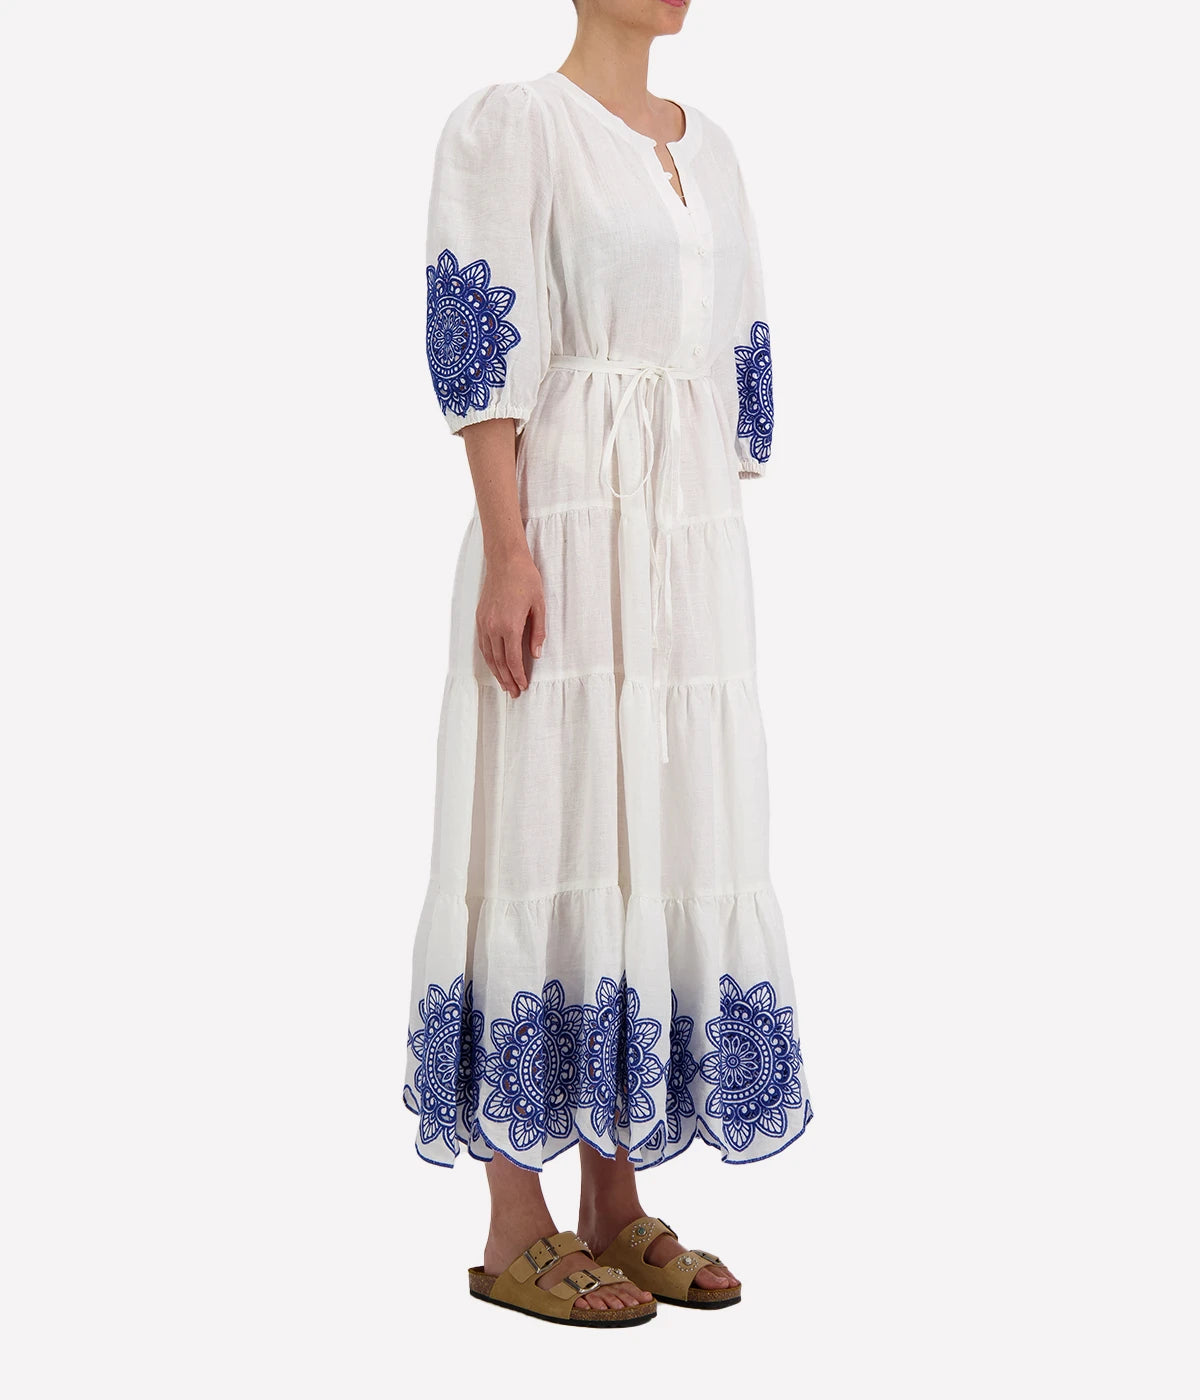 Long Daisy Dress in White & Blue